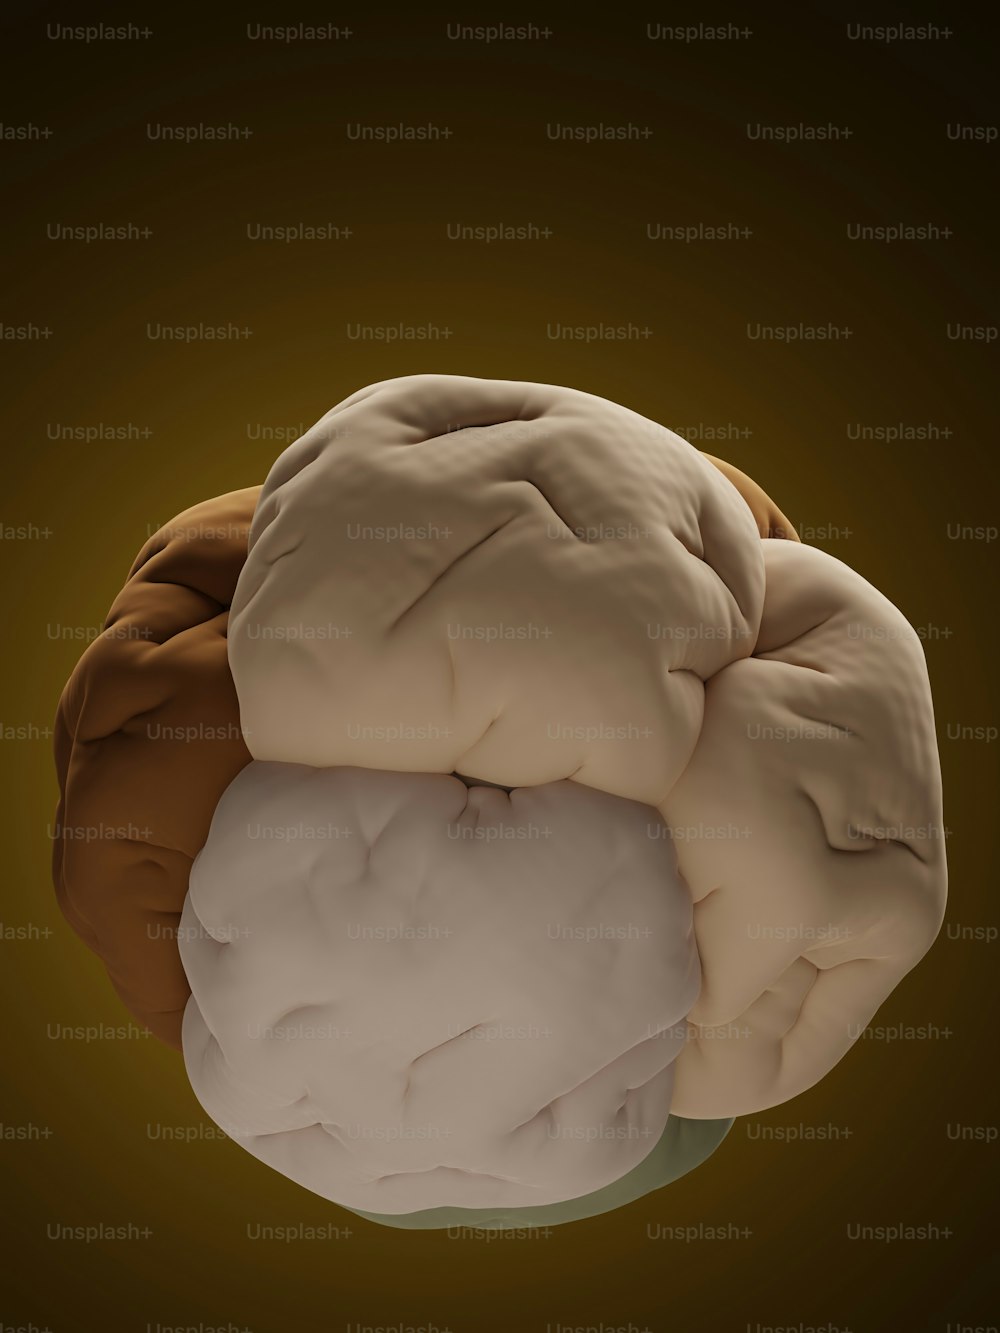 une image générée par ordinateur d’un cerveau humain